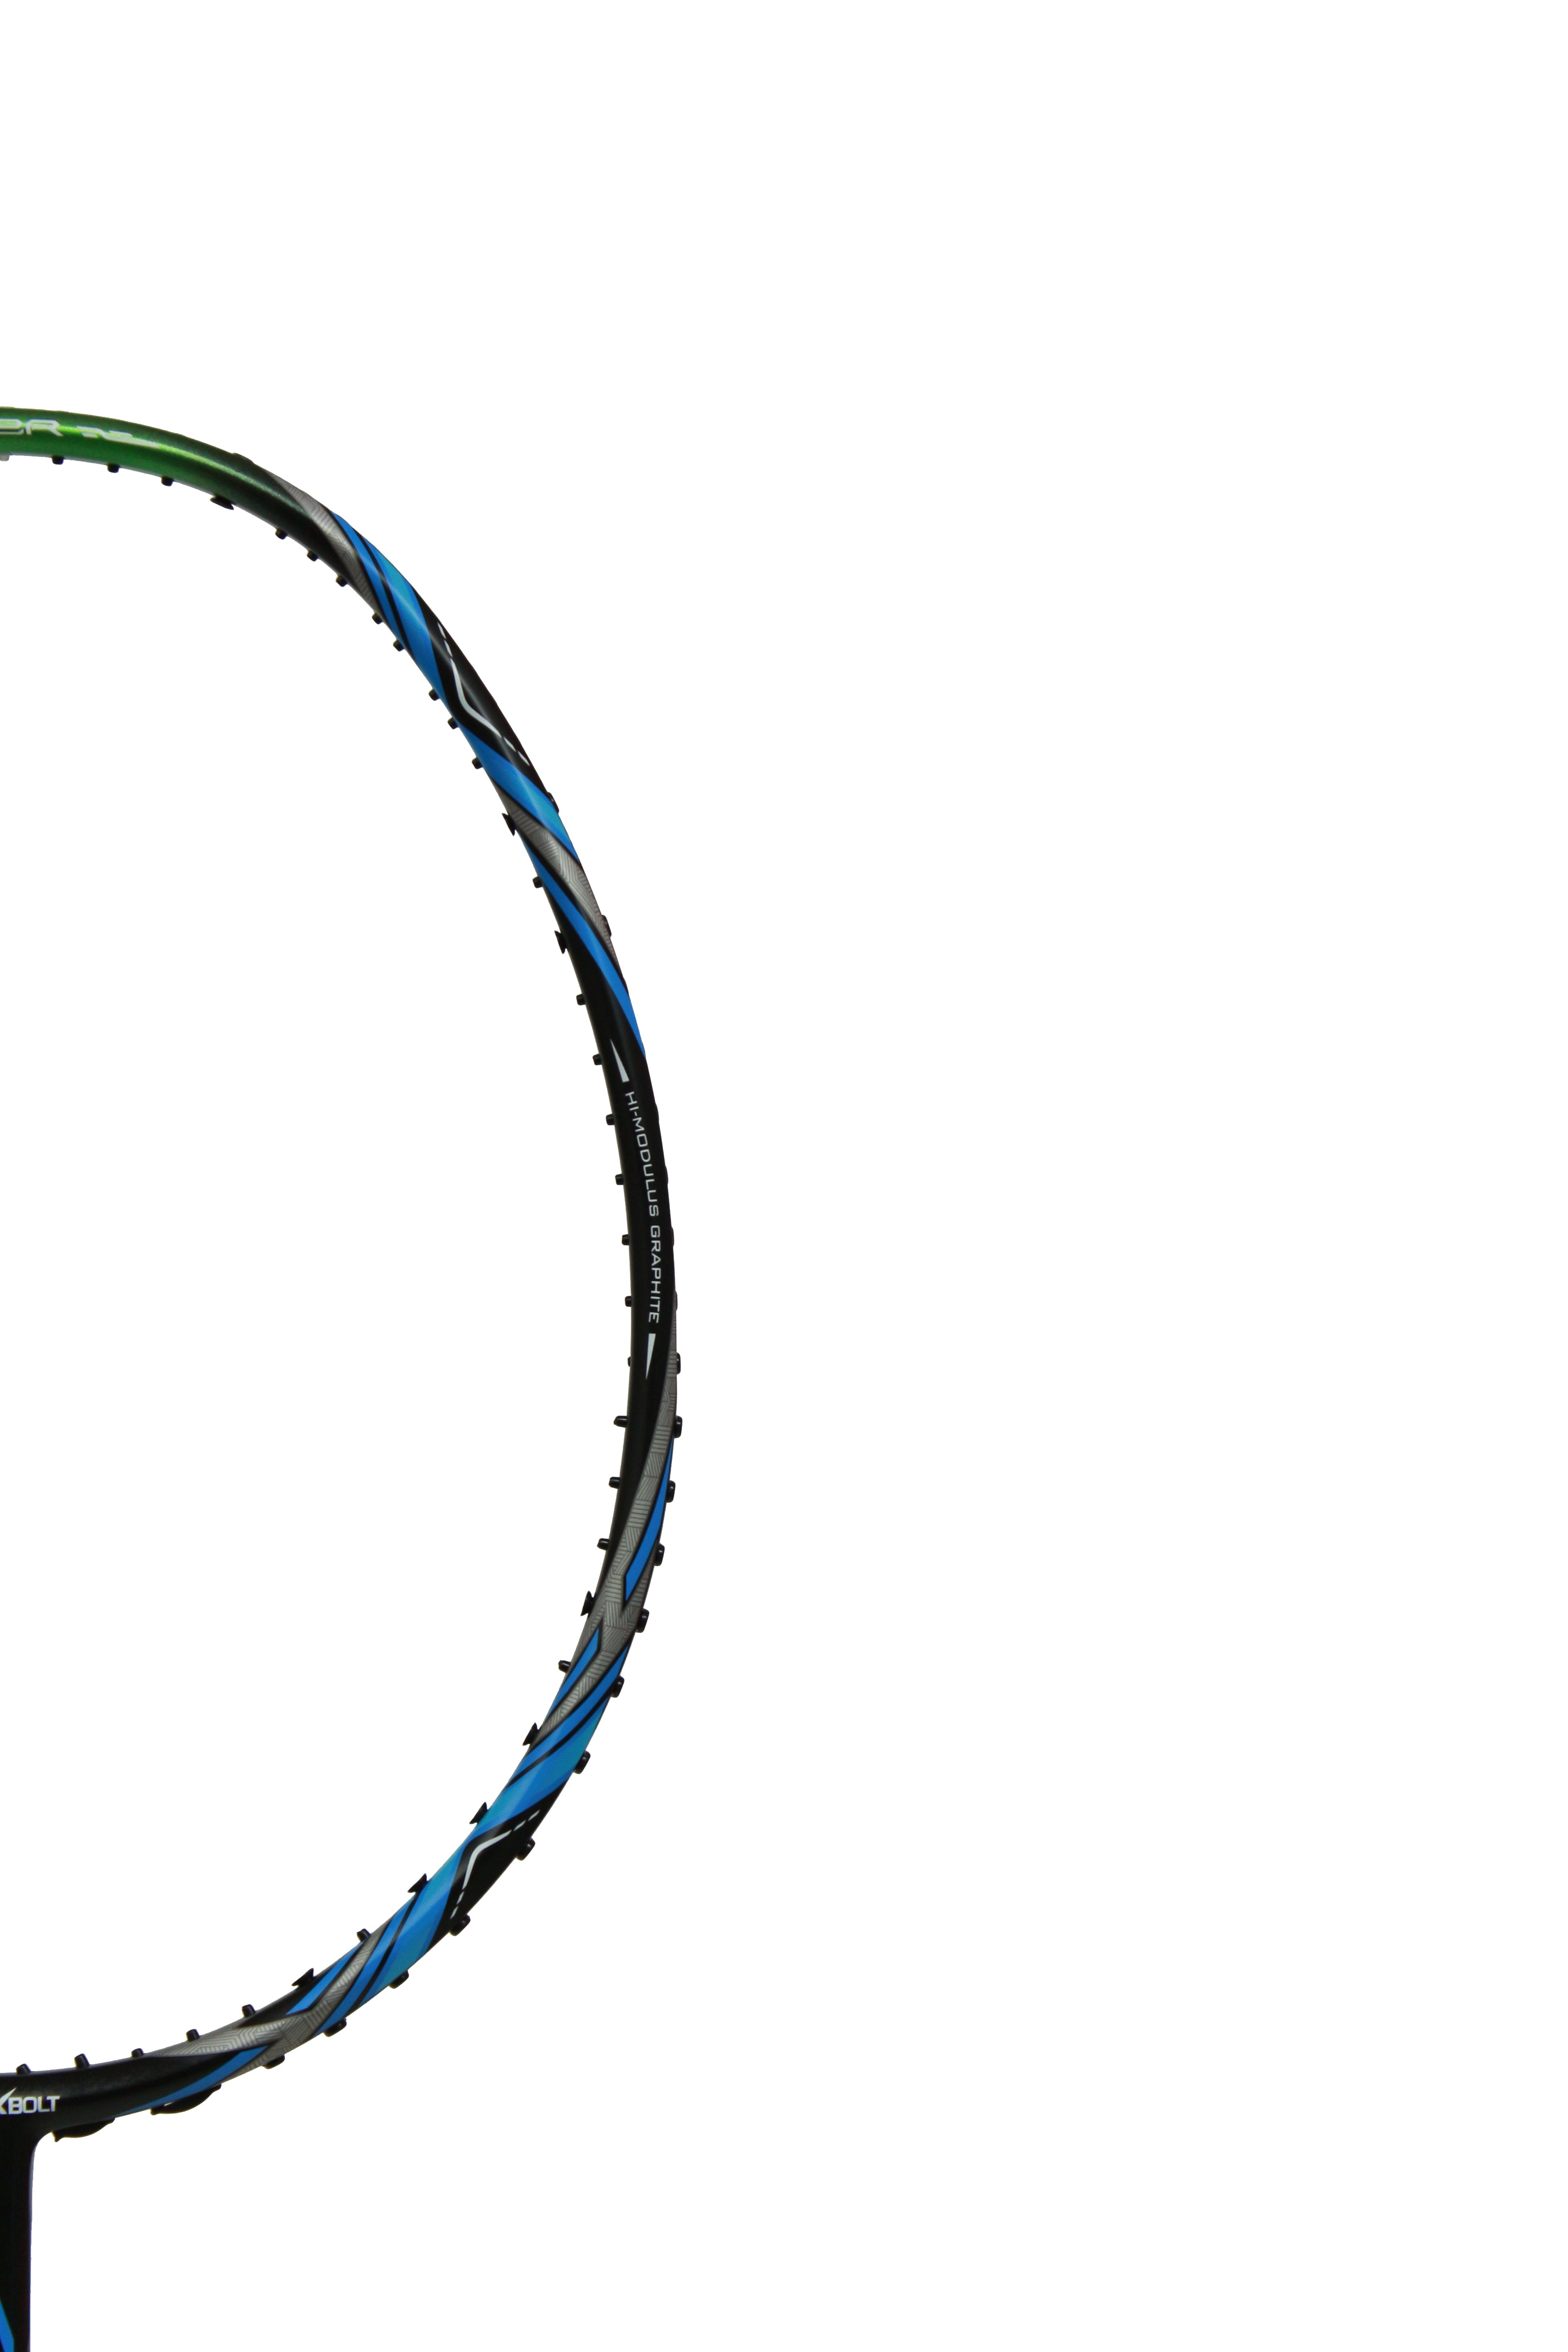 Maxbolt Nezer X-19 Blue Badminton Racket